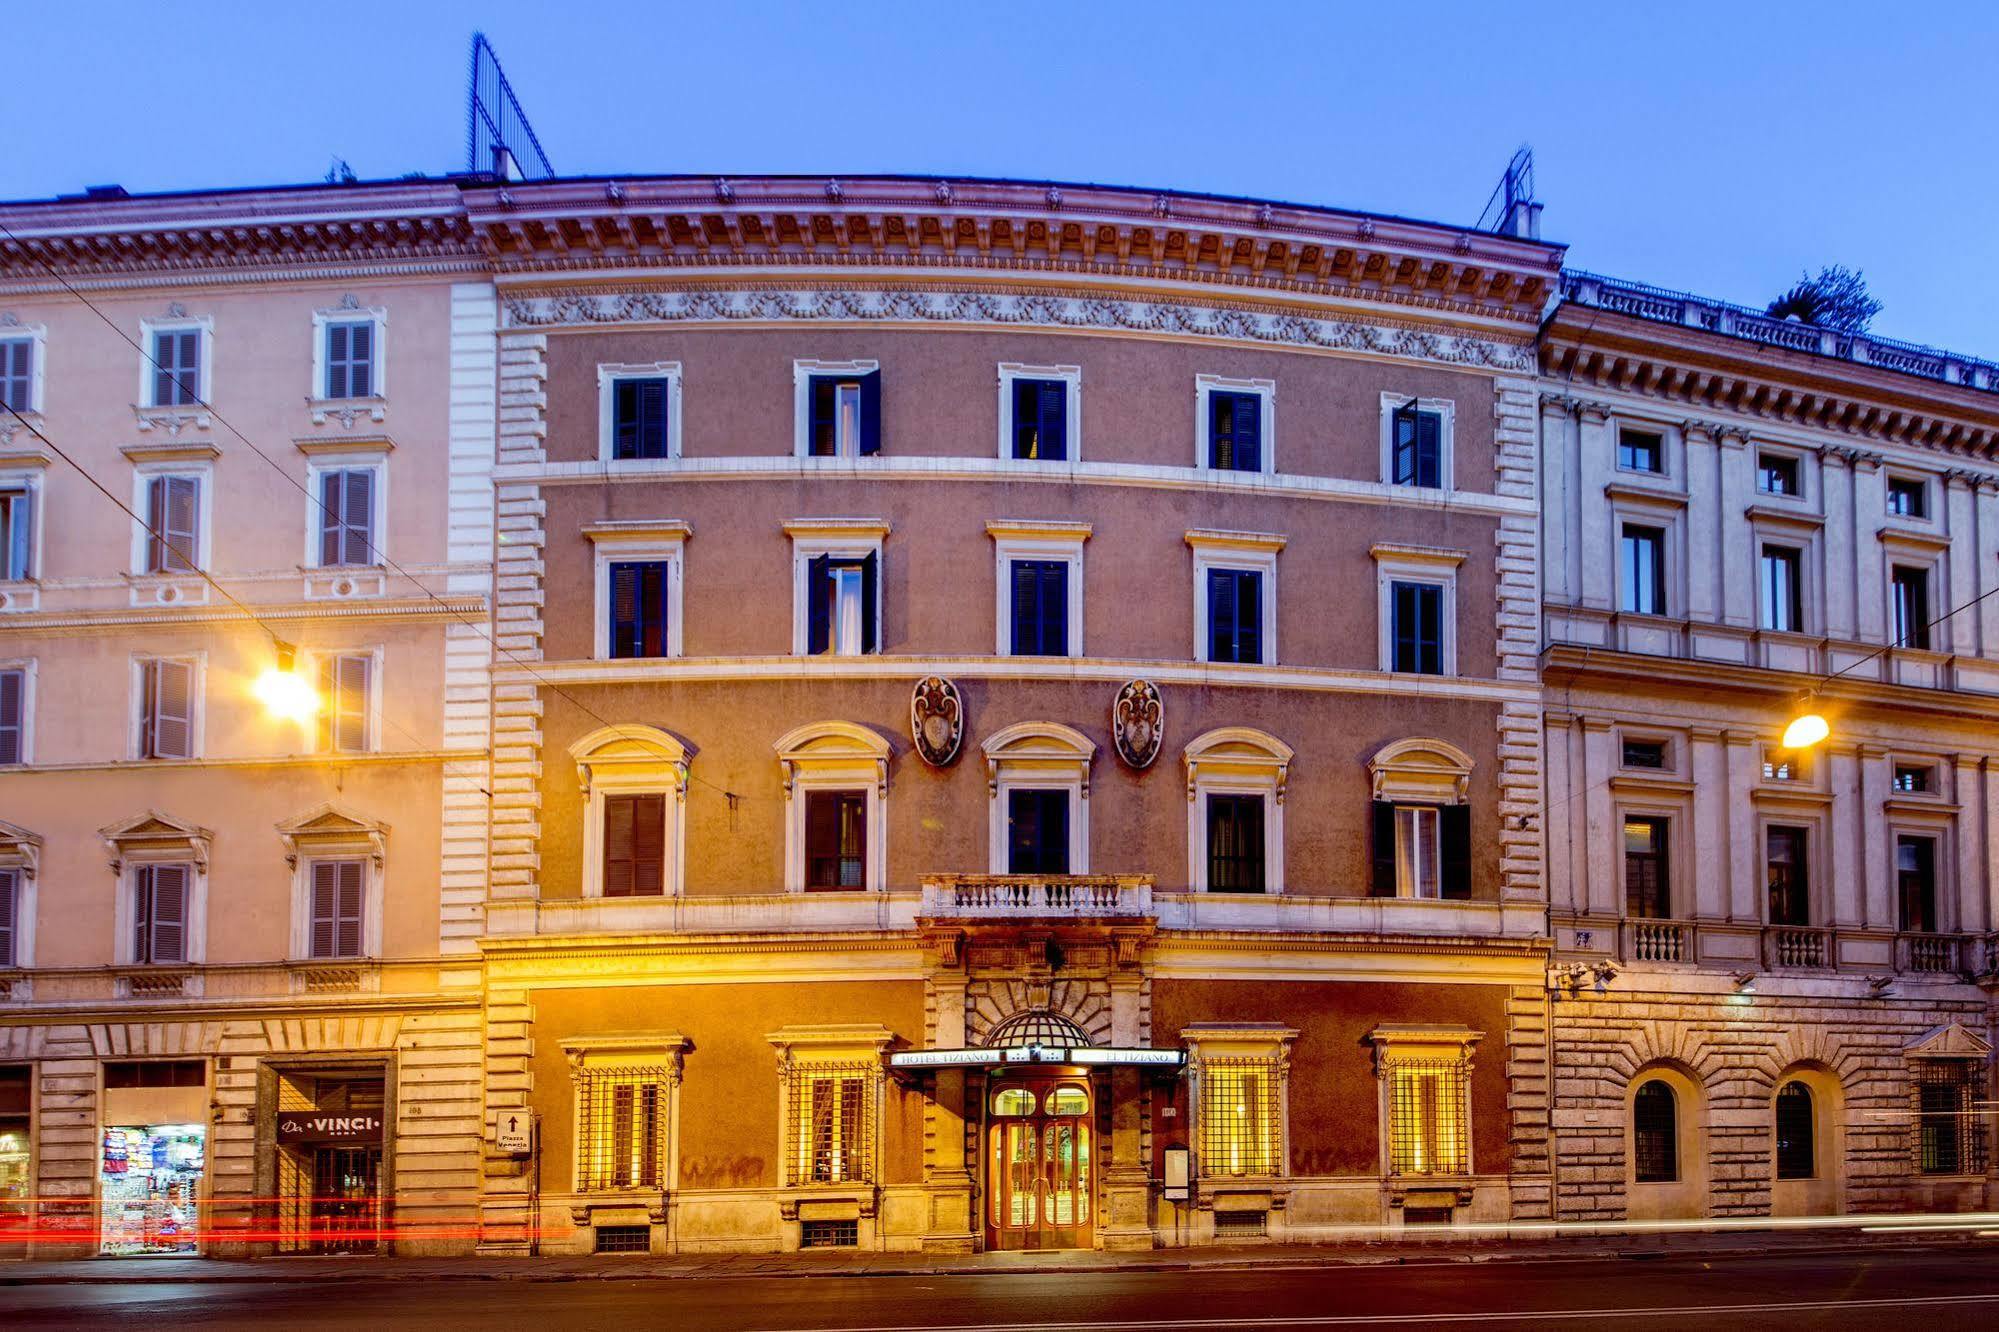 Hotel Tiziano Rome Buitenkant foto